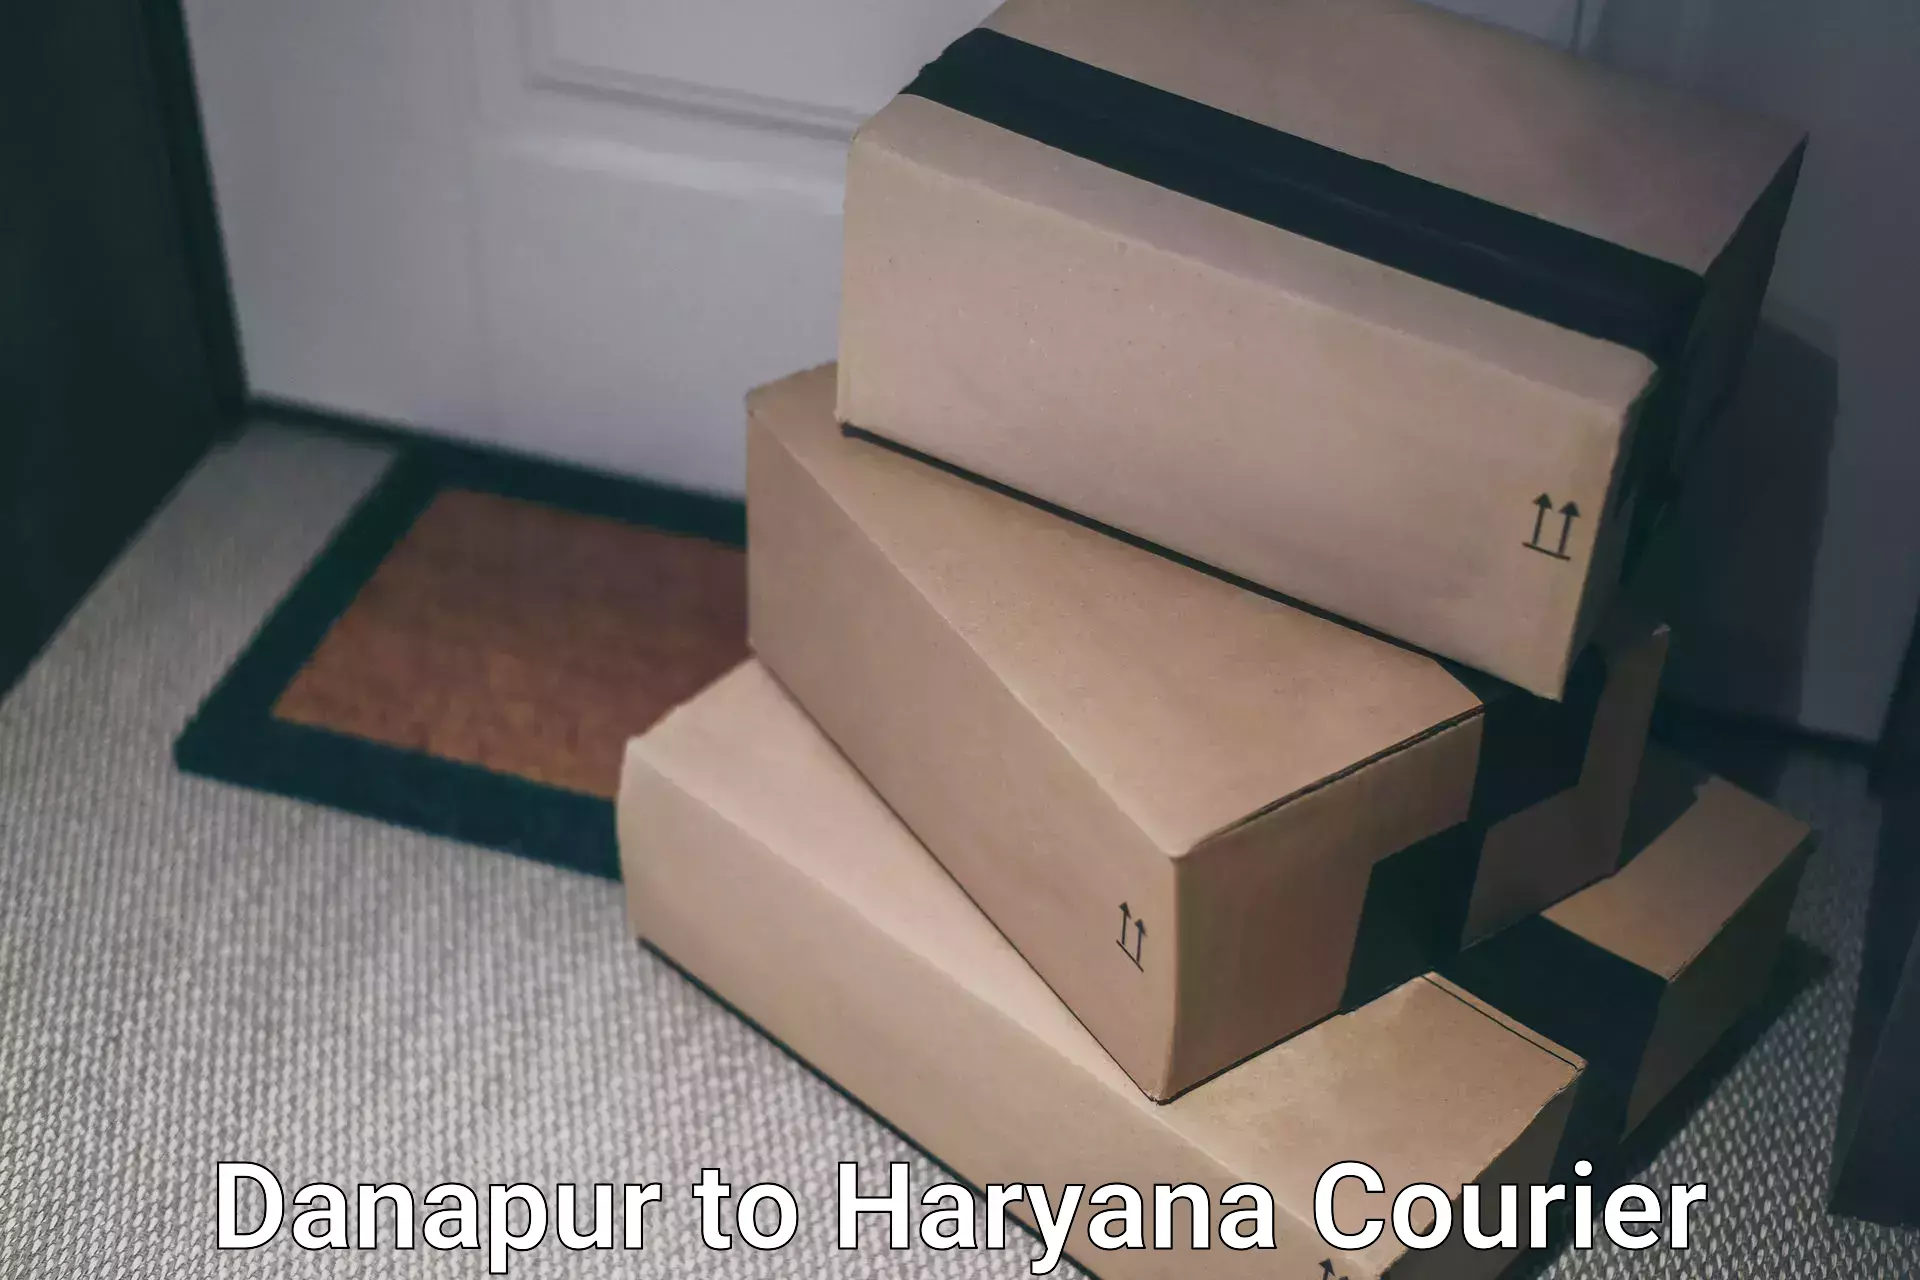 Courier service comparison Danapur to Assandh